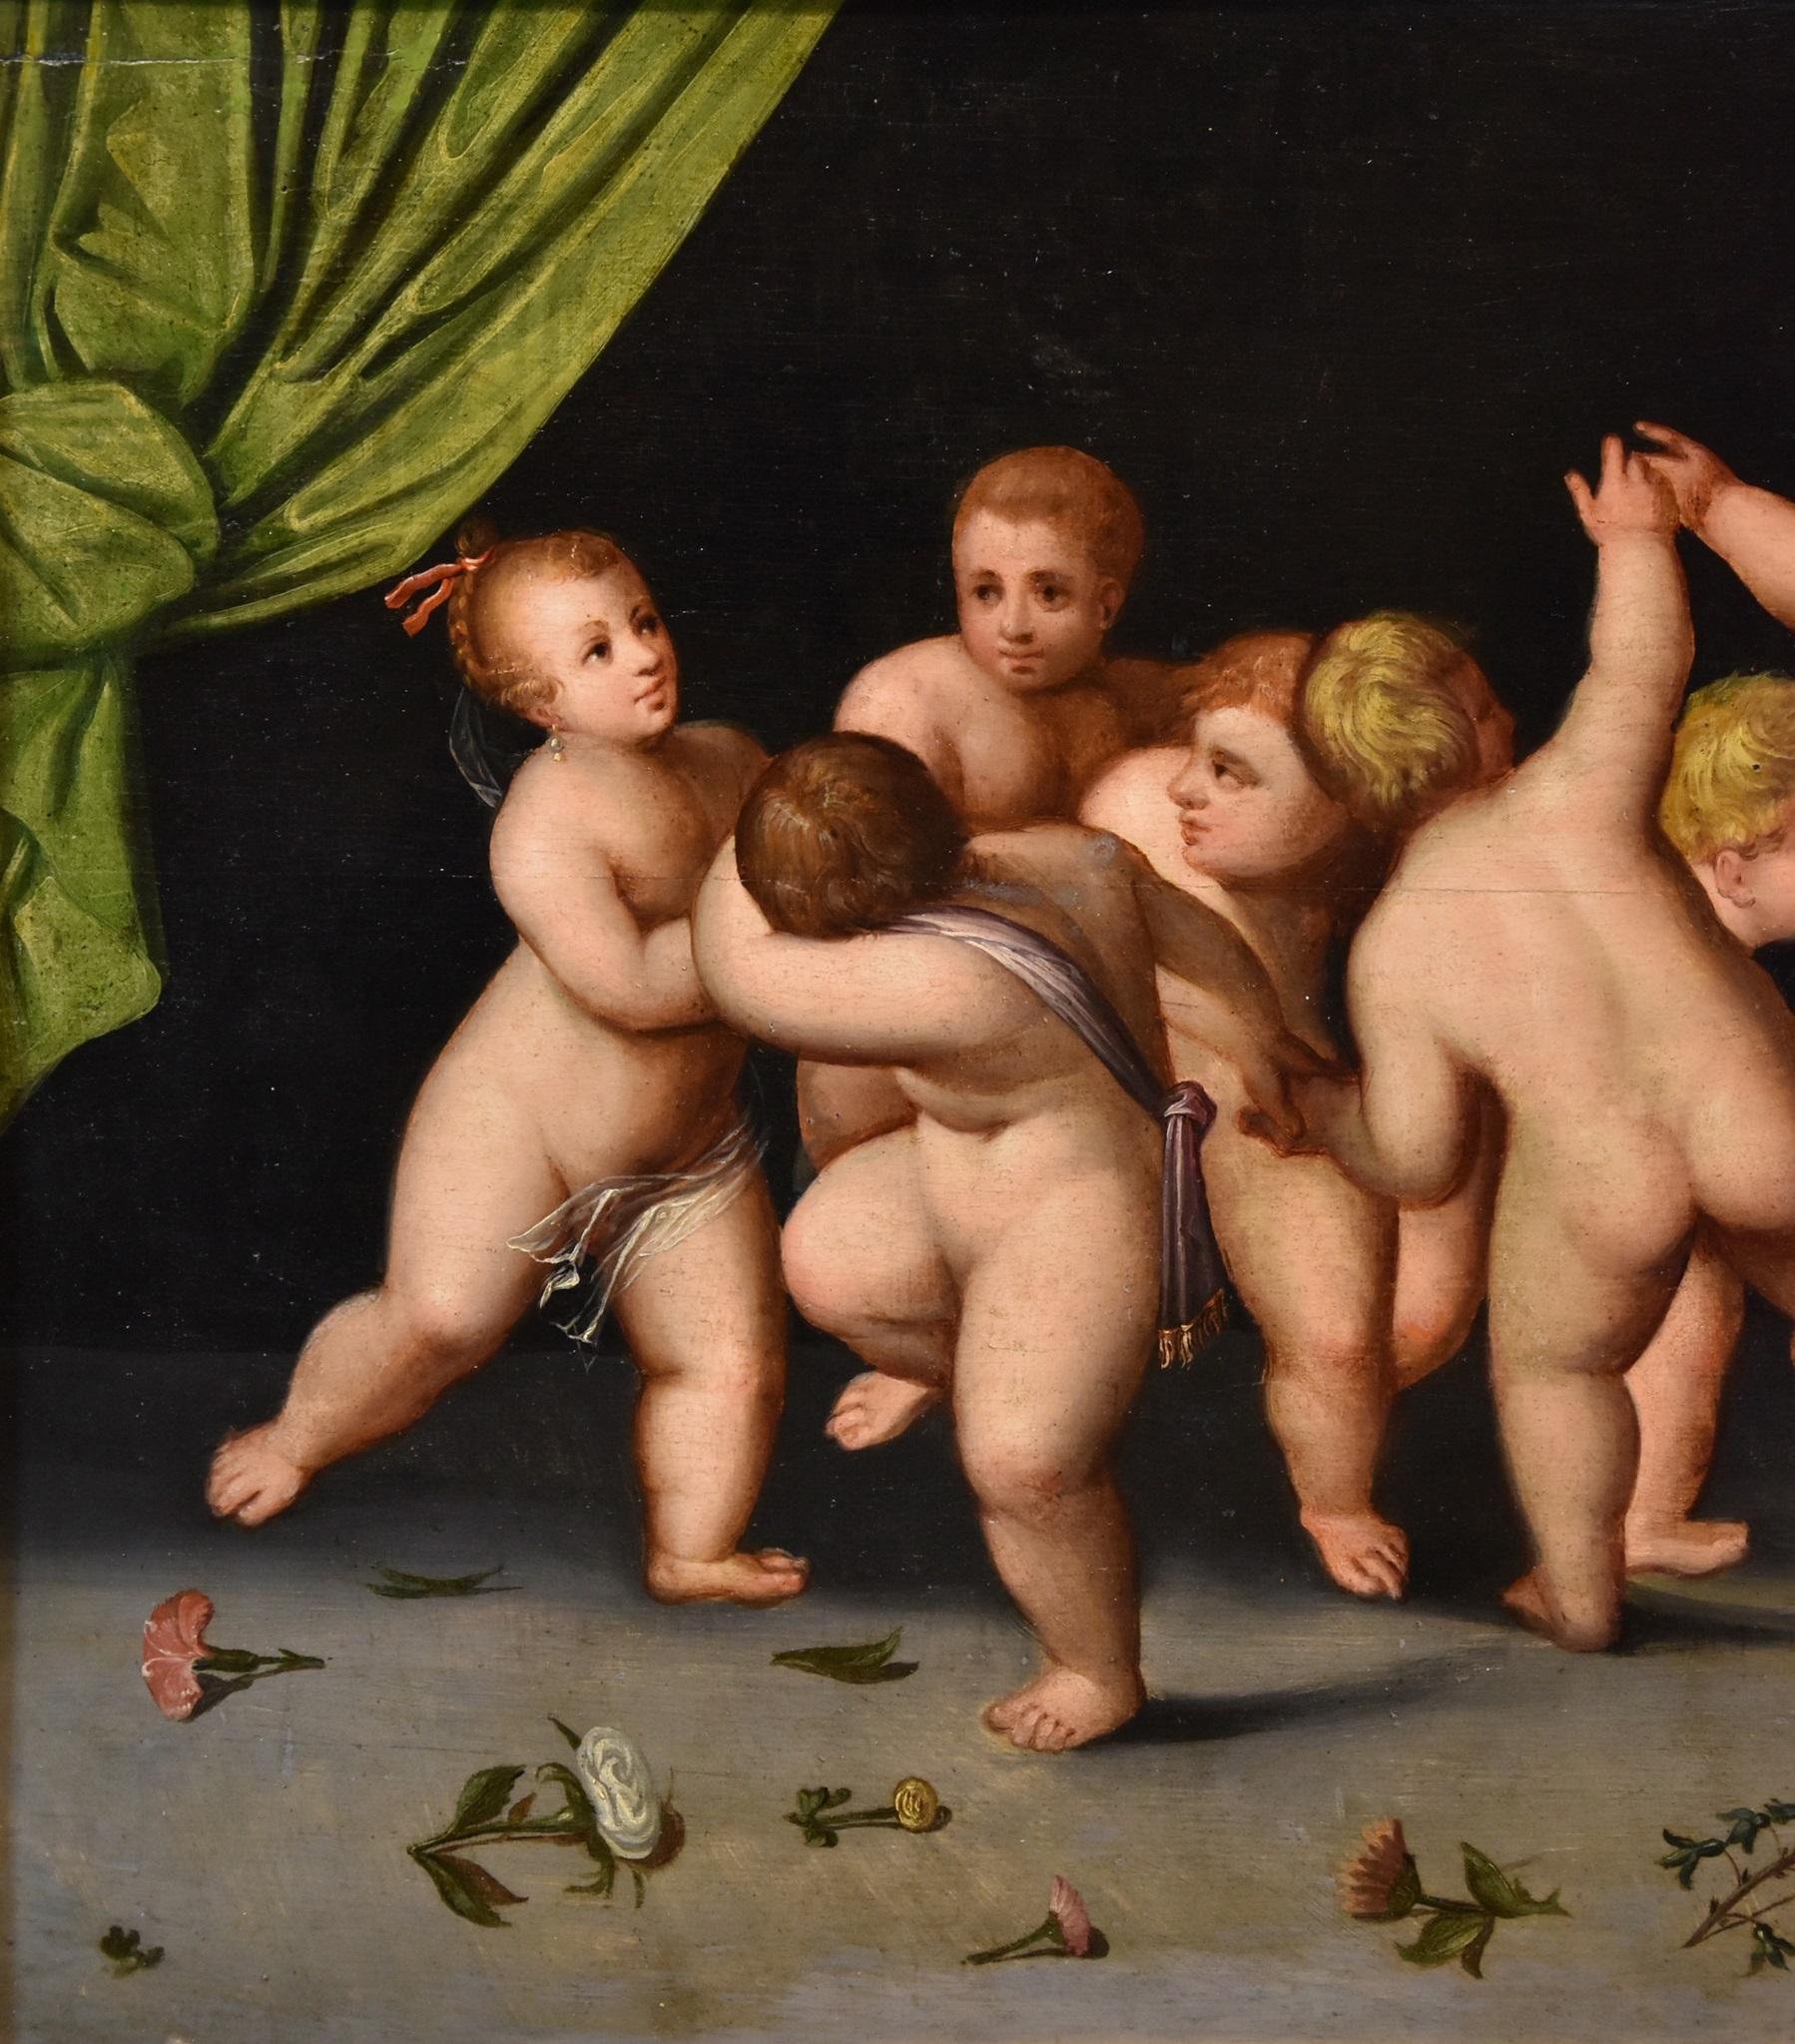 Werkstatt von Cornelis van Cleve, oder Van Cleef (Antwerpen, 1520 - 1567)
Flämische Schule, Ende 16. Jahrhundert
Tanz der Putten

Öl auf Holzplatte
51 x 108 cm. - gerahmt 67 x 124 cm.

Klicken Sie HIER, um die vollständige Beschreibung des Gemäldes